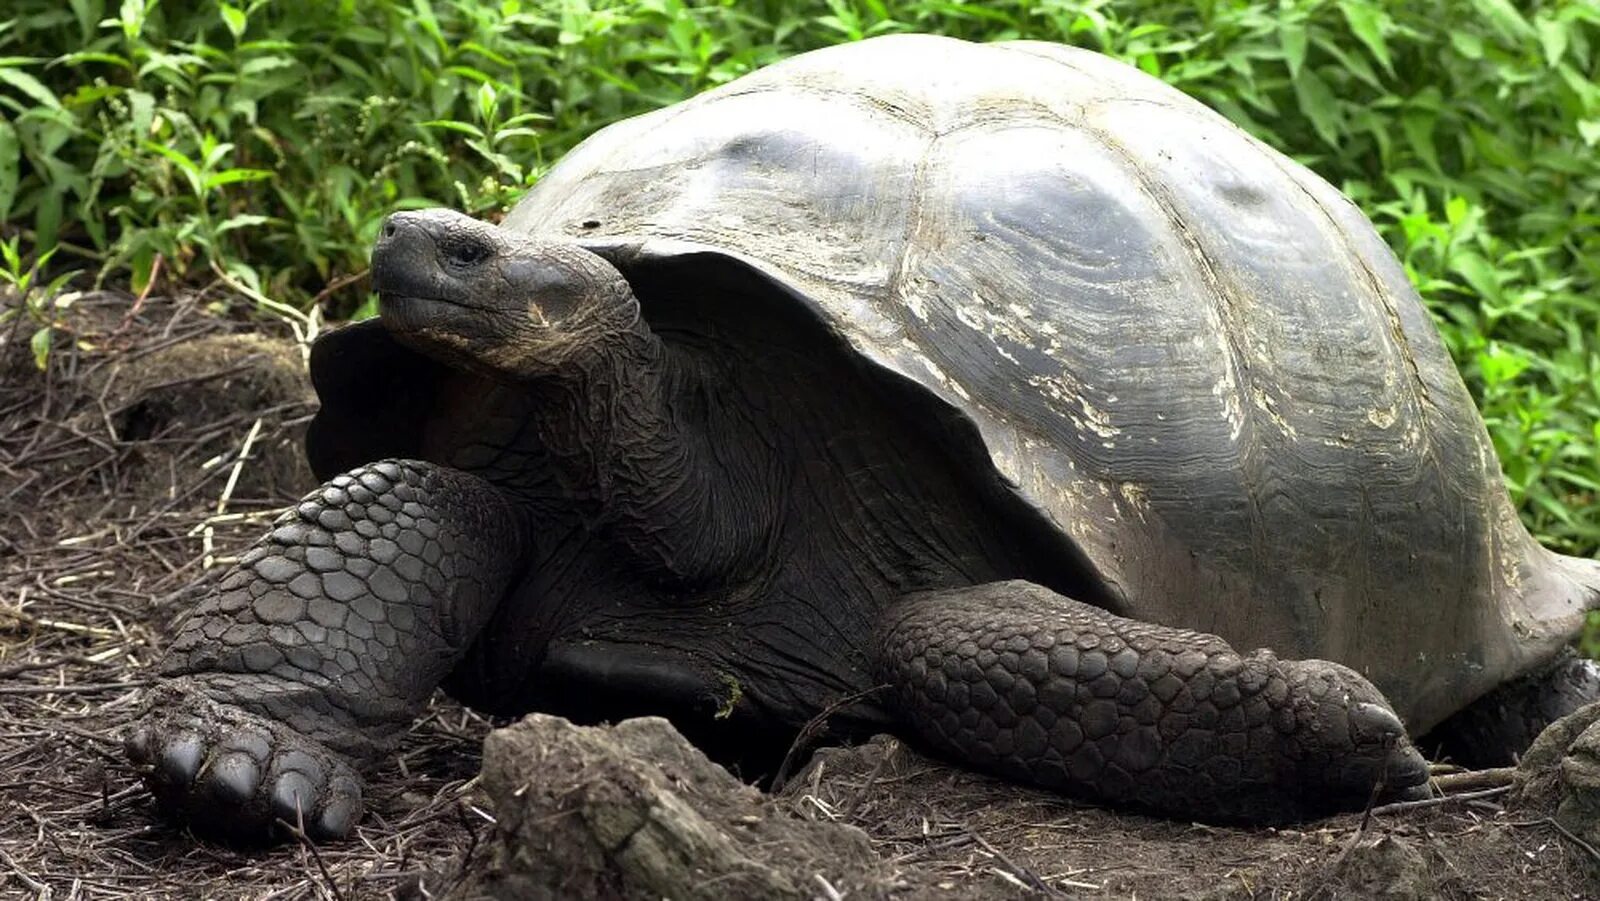 Слоновая черепаха среда обитания. Галапагосская черепаха. Галапагосская слоновая черепаха. Галапагосские острова черепахи. Галапагосская гигантская черепаха вымерла.